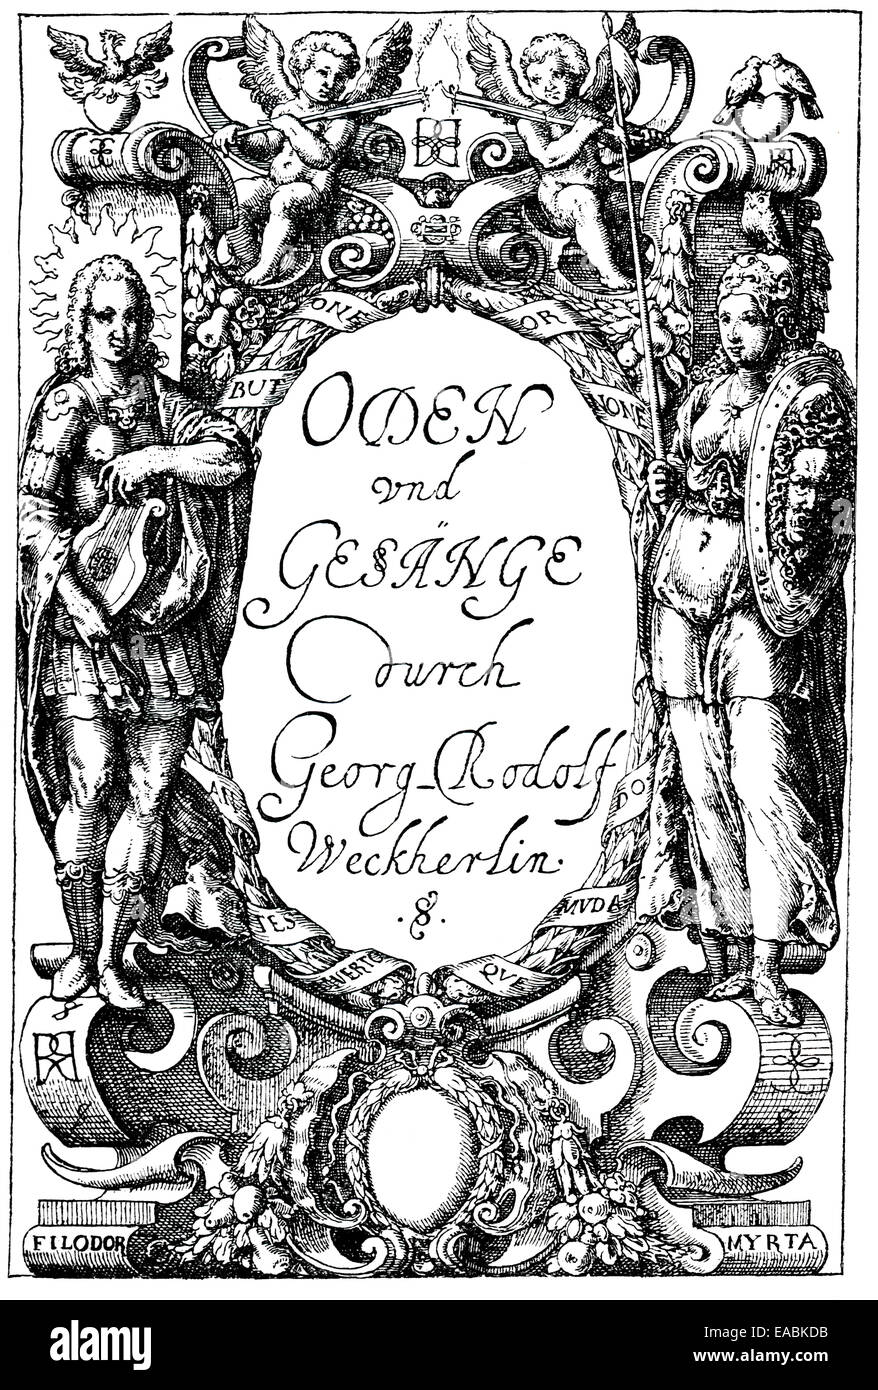 Titolo storico di Georg Rudolf Weckherlin 1584 - 1653, un poeta tedesco, 1618, Titelseite Oden und Gesänge von Georg Rodolf Weckher Foto Stock